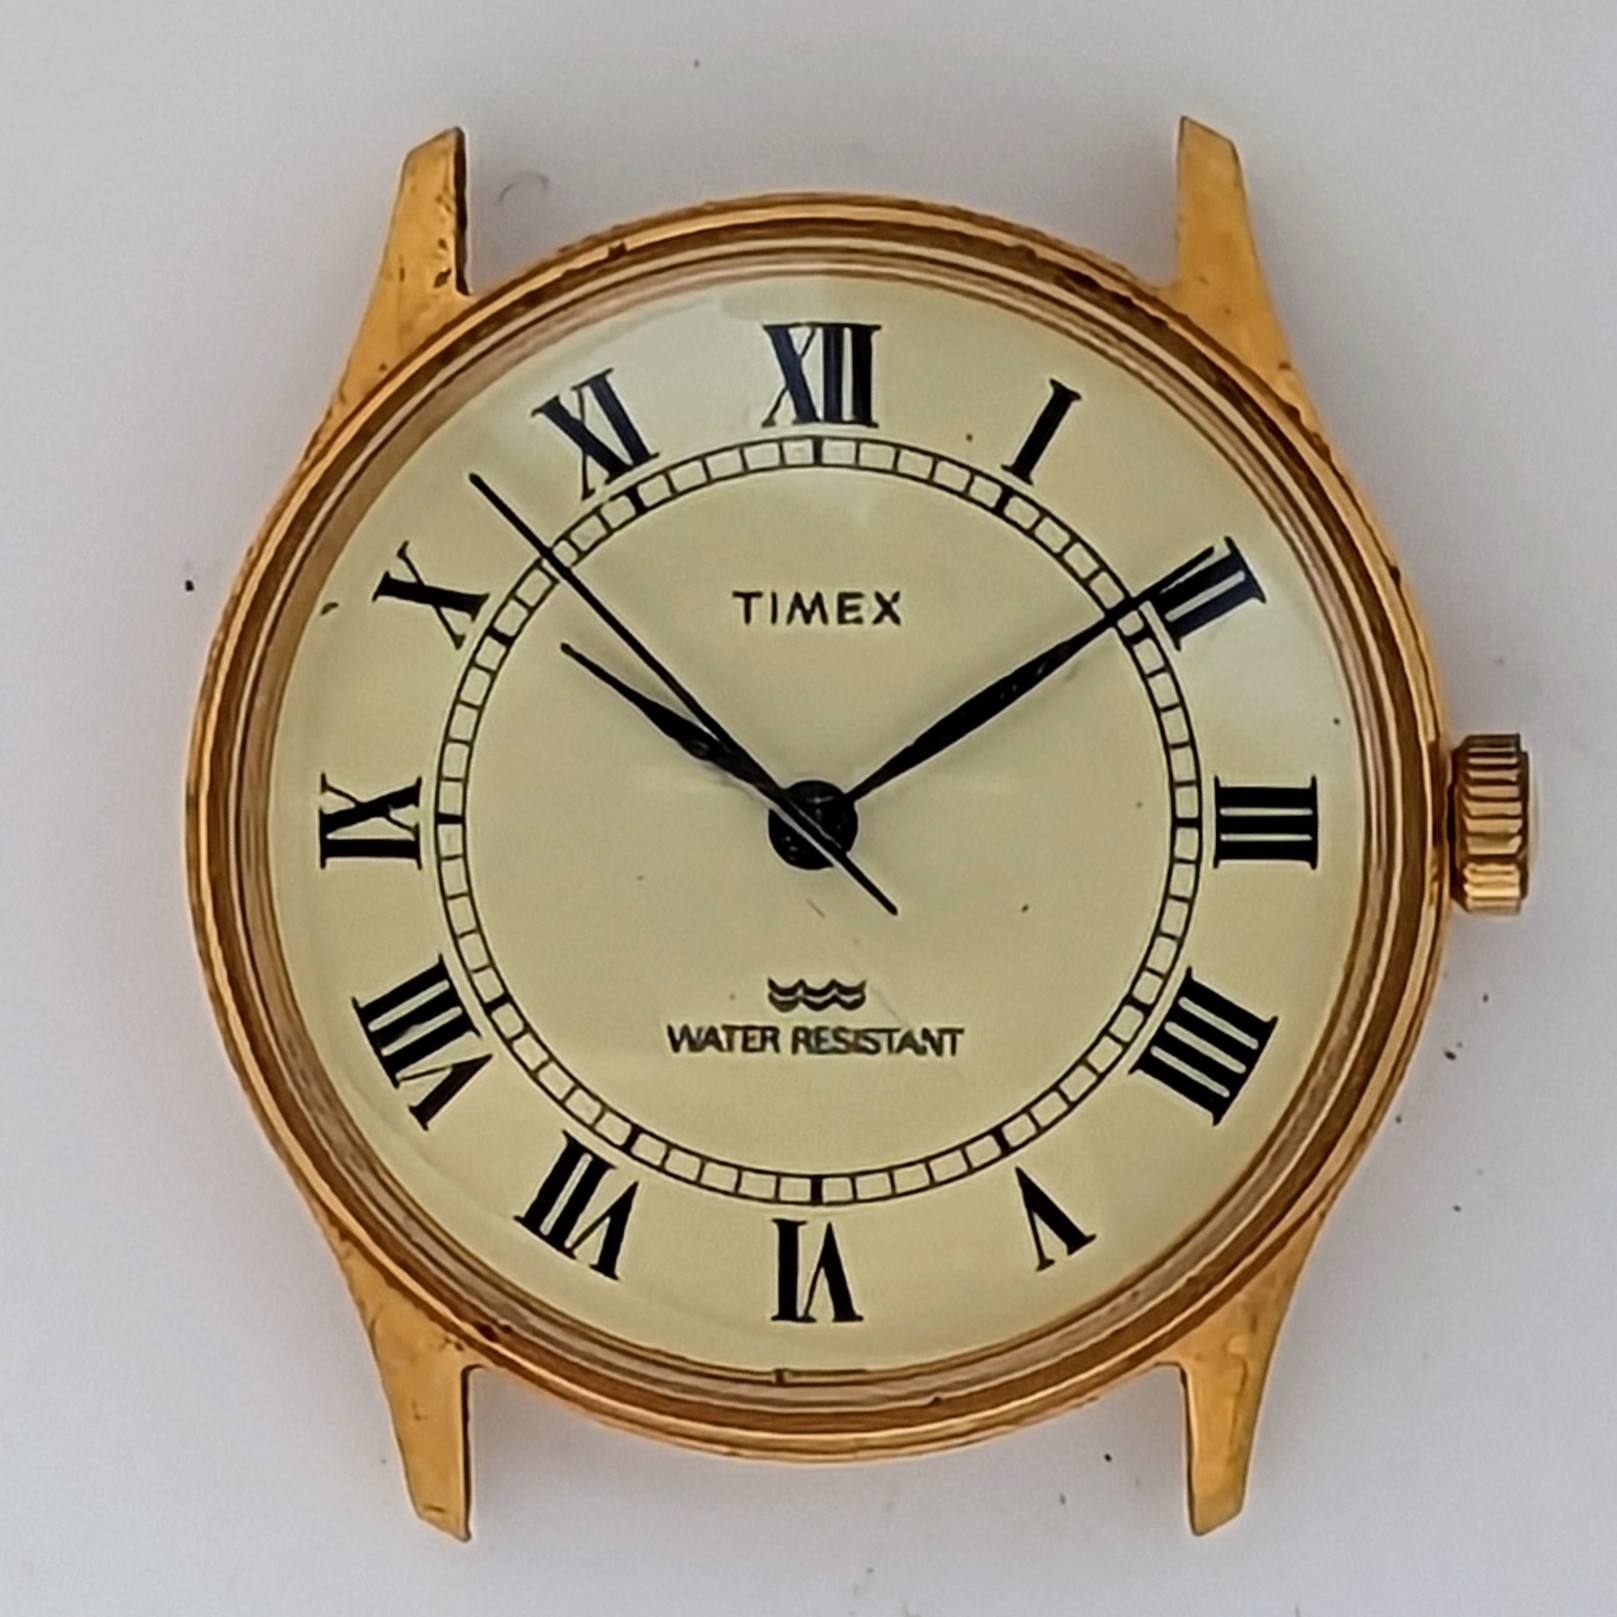 Timex Marlin 20622 11682 [1982]